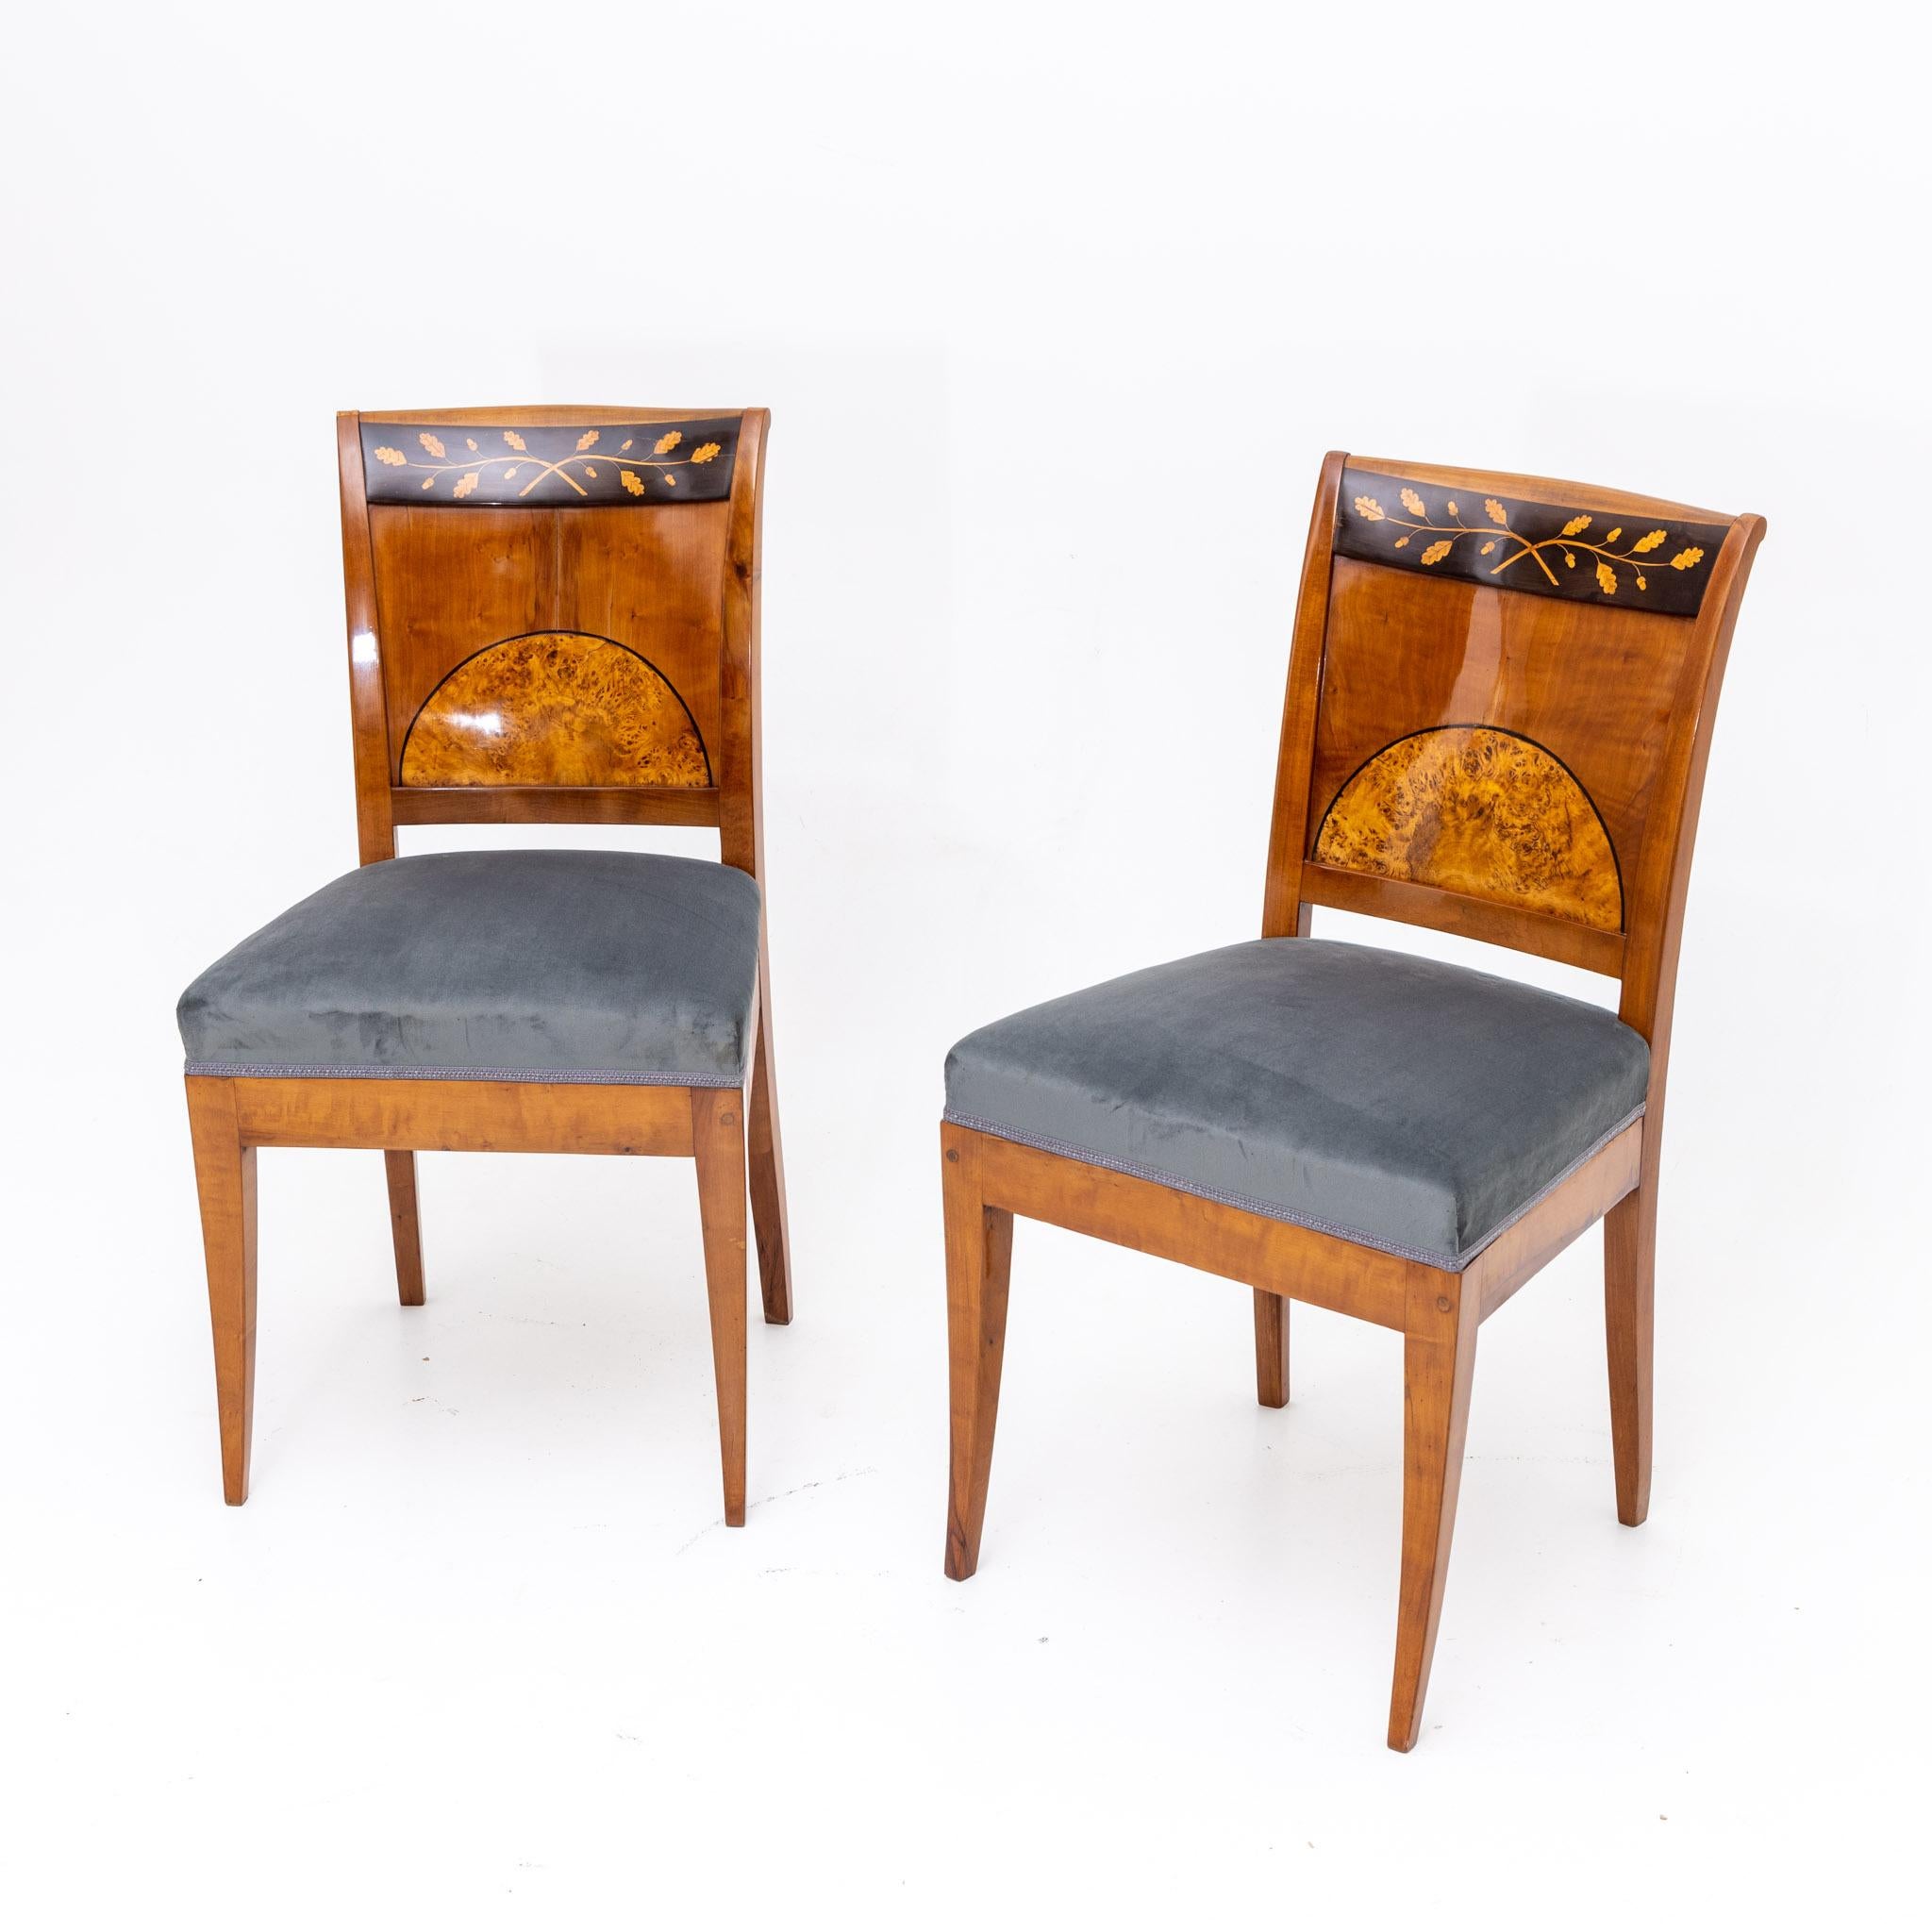 Italian Biedermeier Chairs, Central German circa 1820